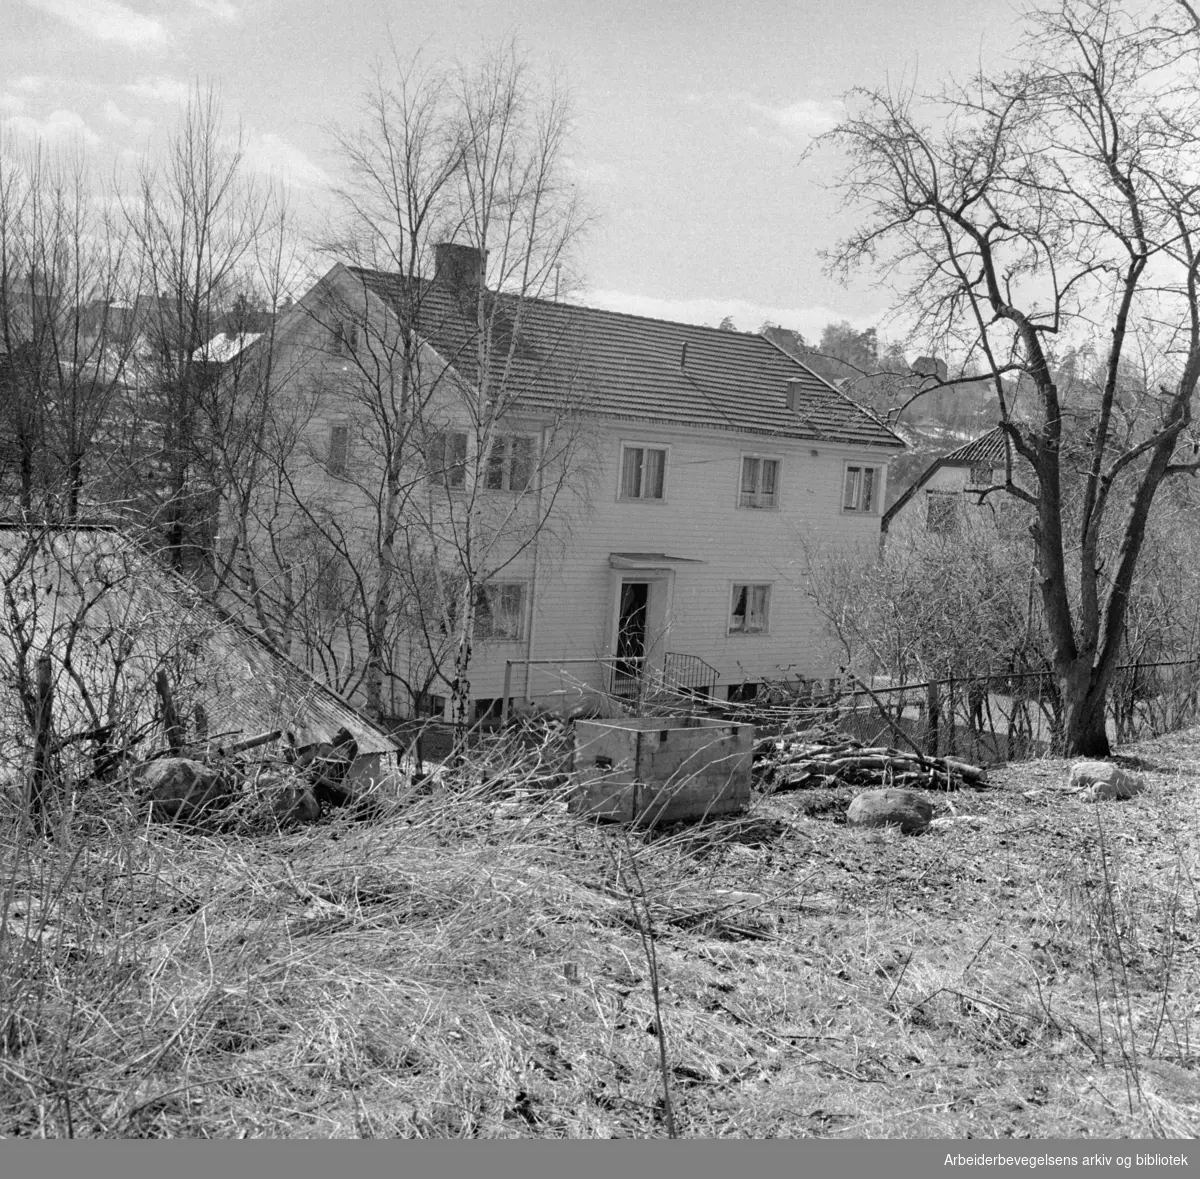 Østensjøveien. "Røde kors" vil ominnrede villaen til utgangshjem for løslatte fanger. April 1963